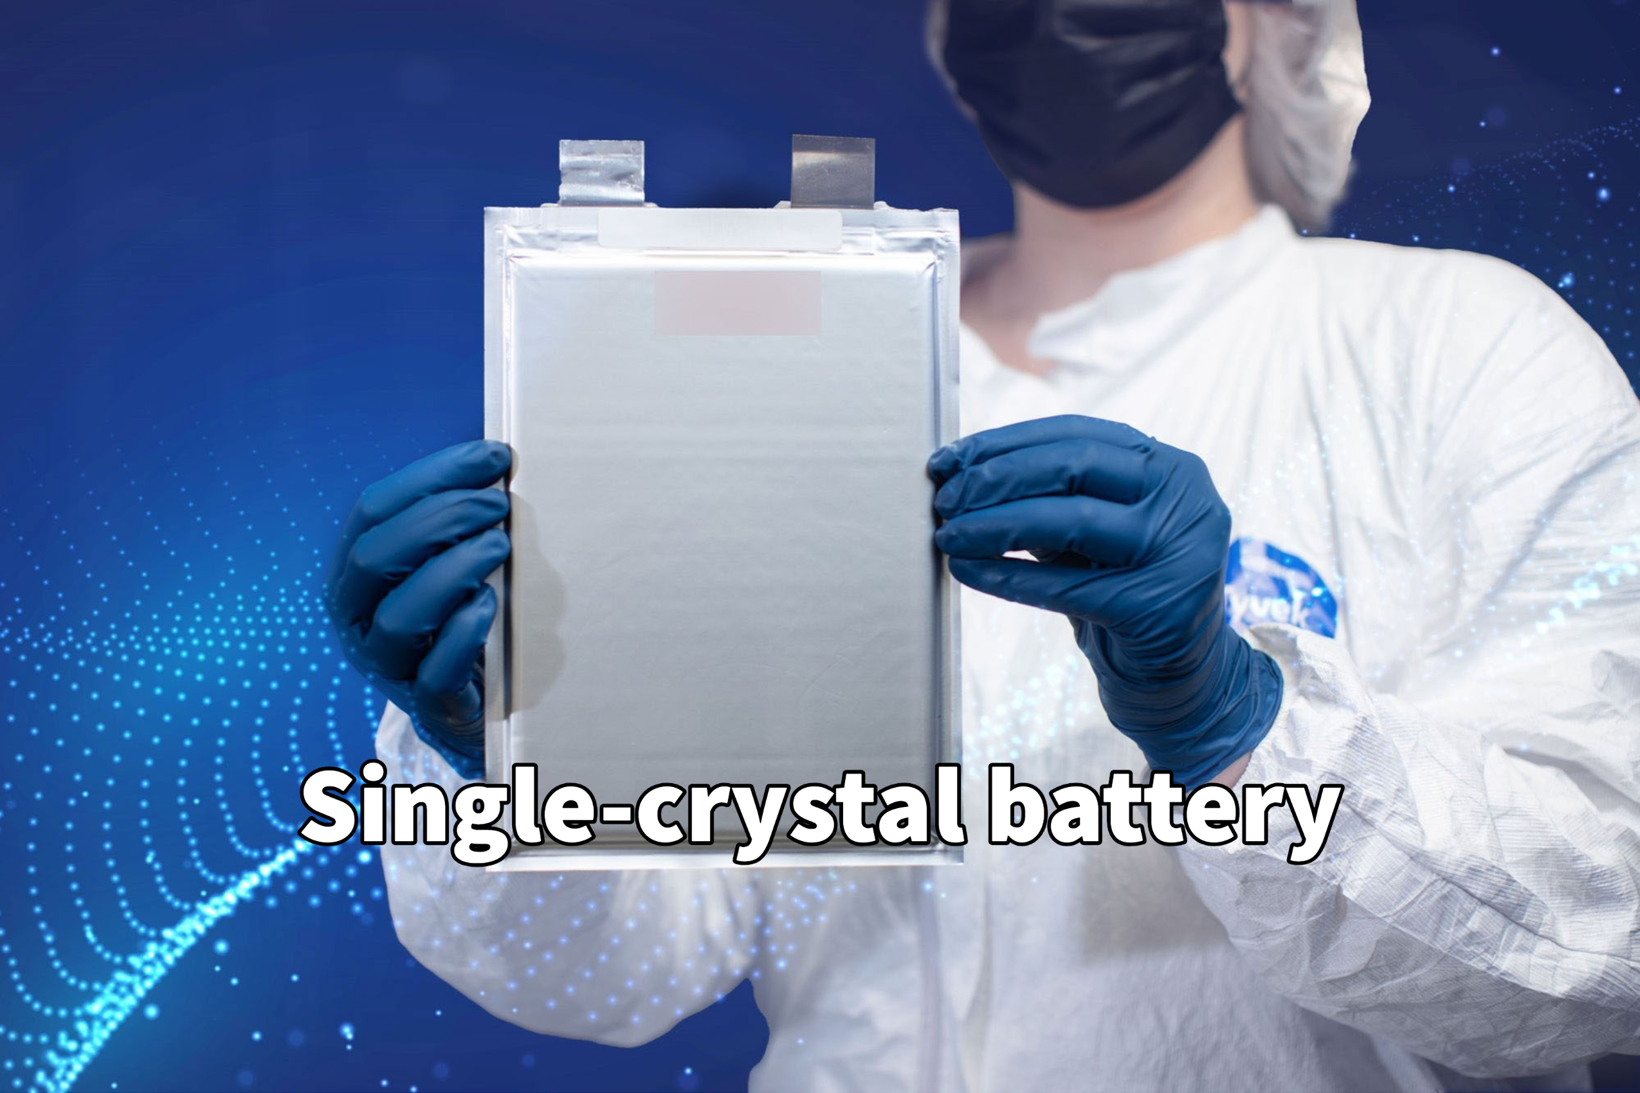 特斯拉正在研发一种新型单晶无钴锂电池，该电池有望降低成本